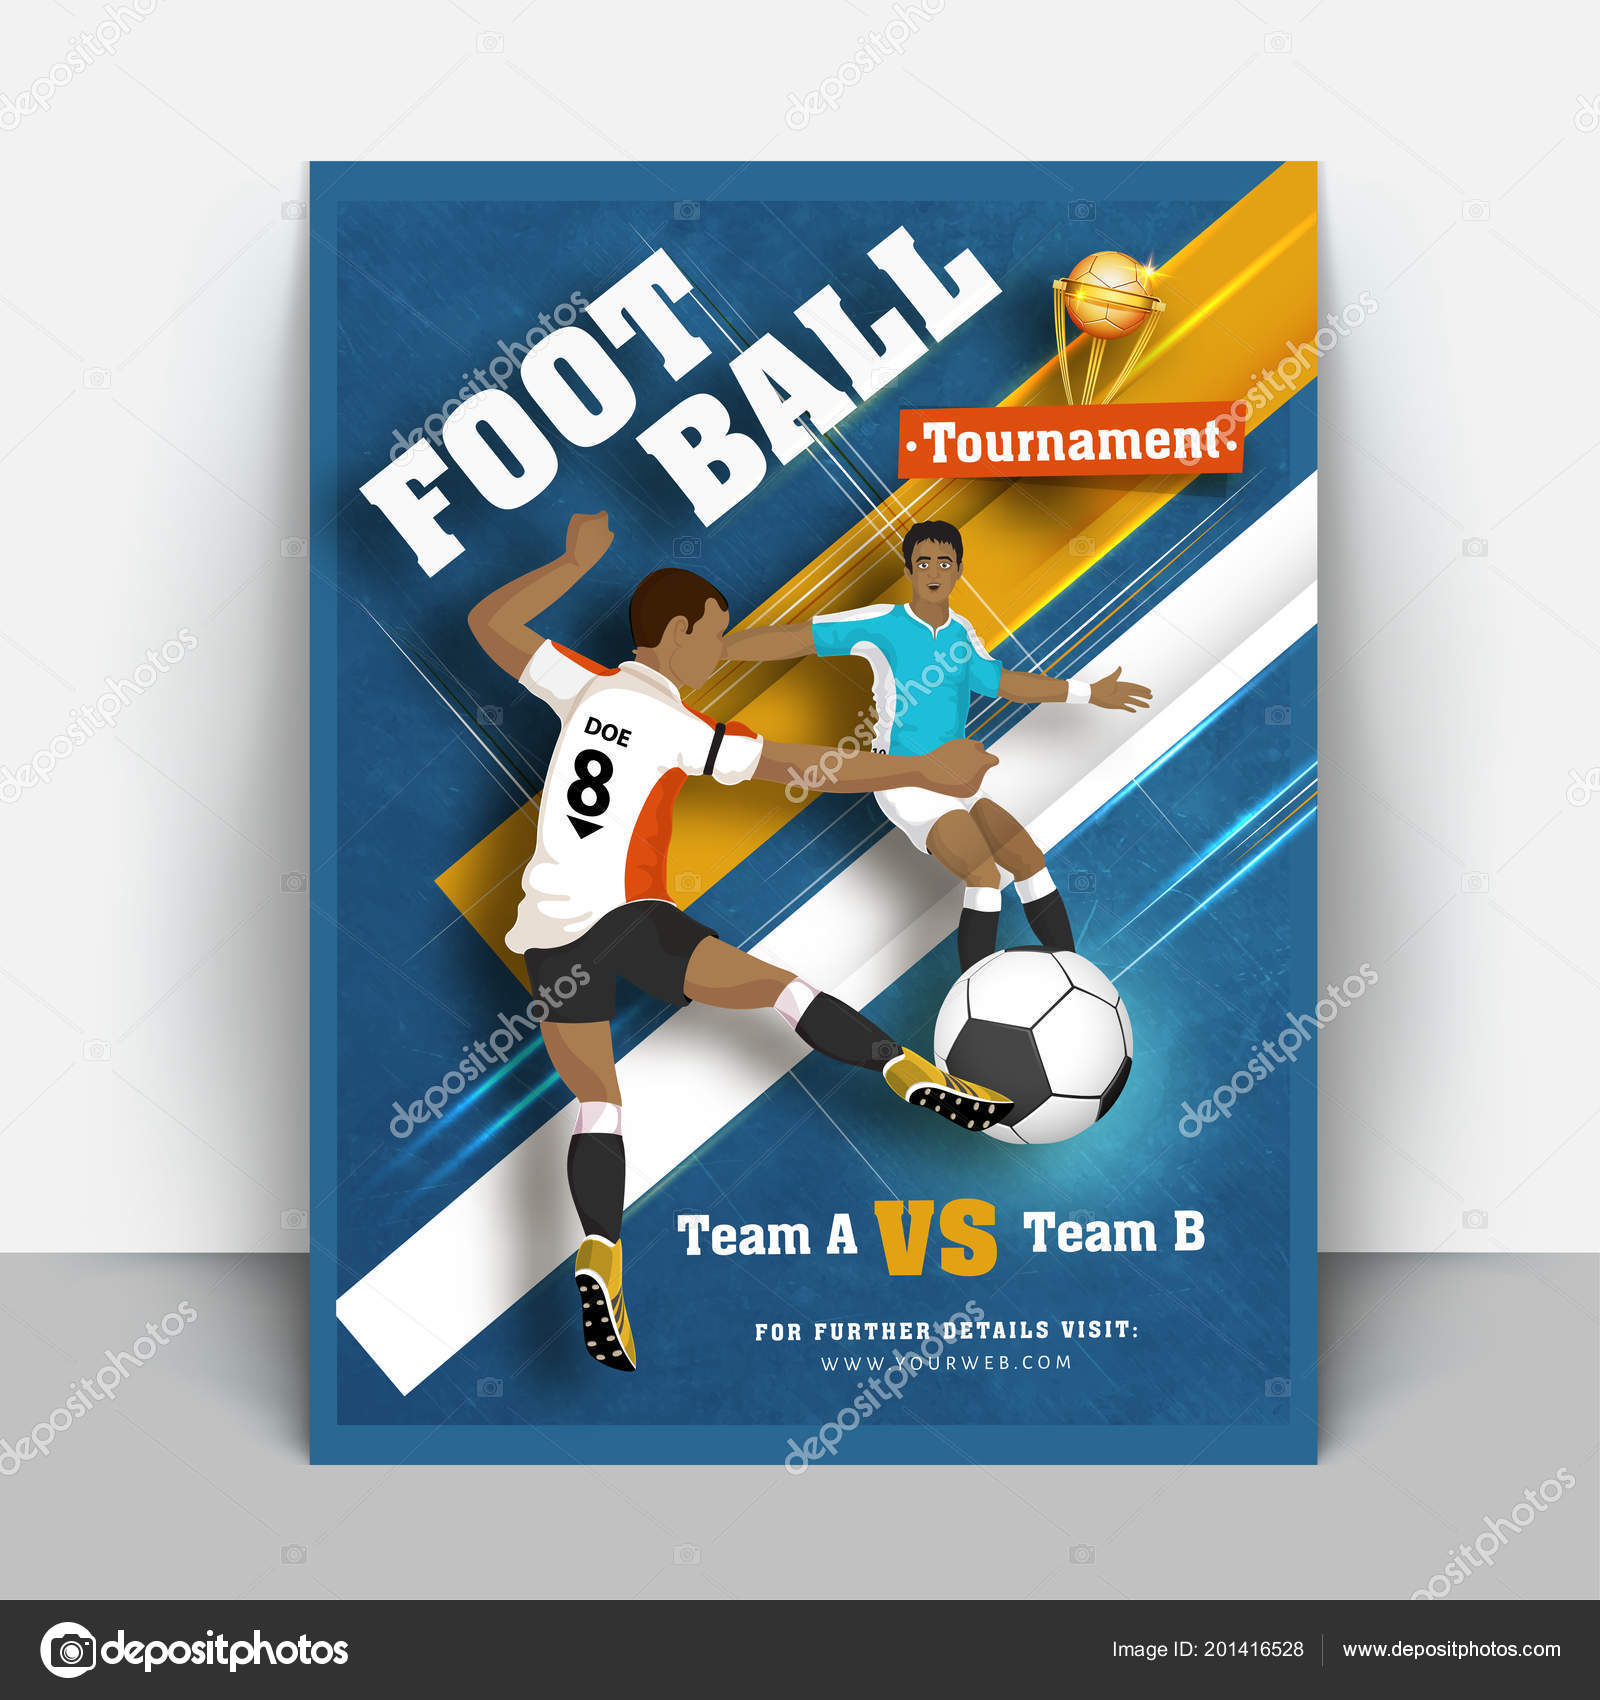 Creative Flyer Template Design Football Players Character Match Details Blue Stock Vector C Alliesinteract